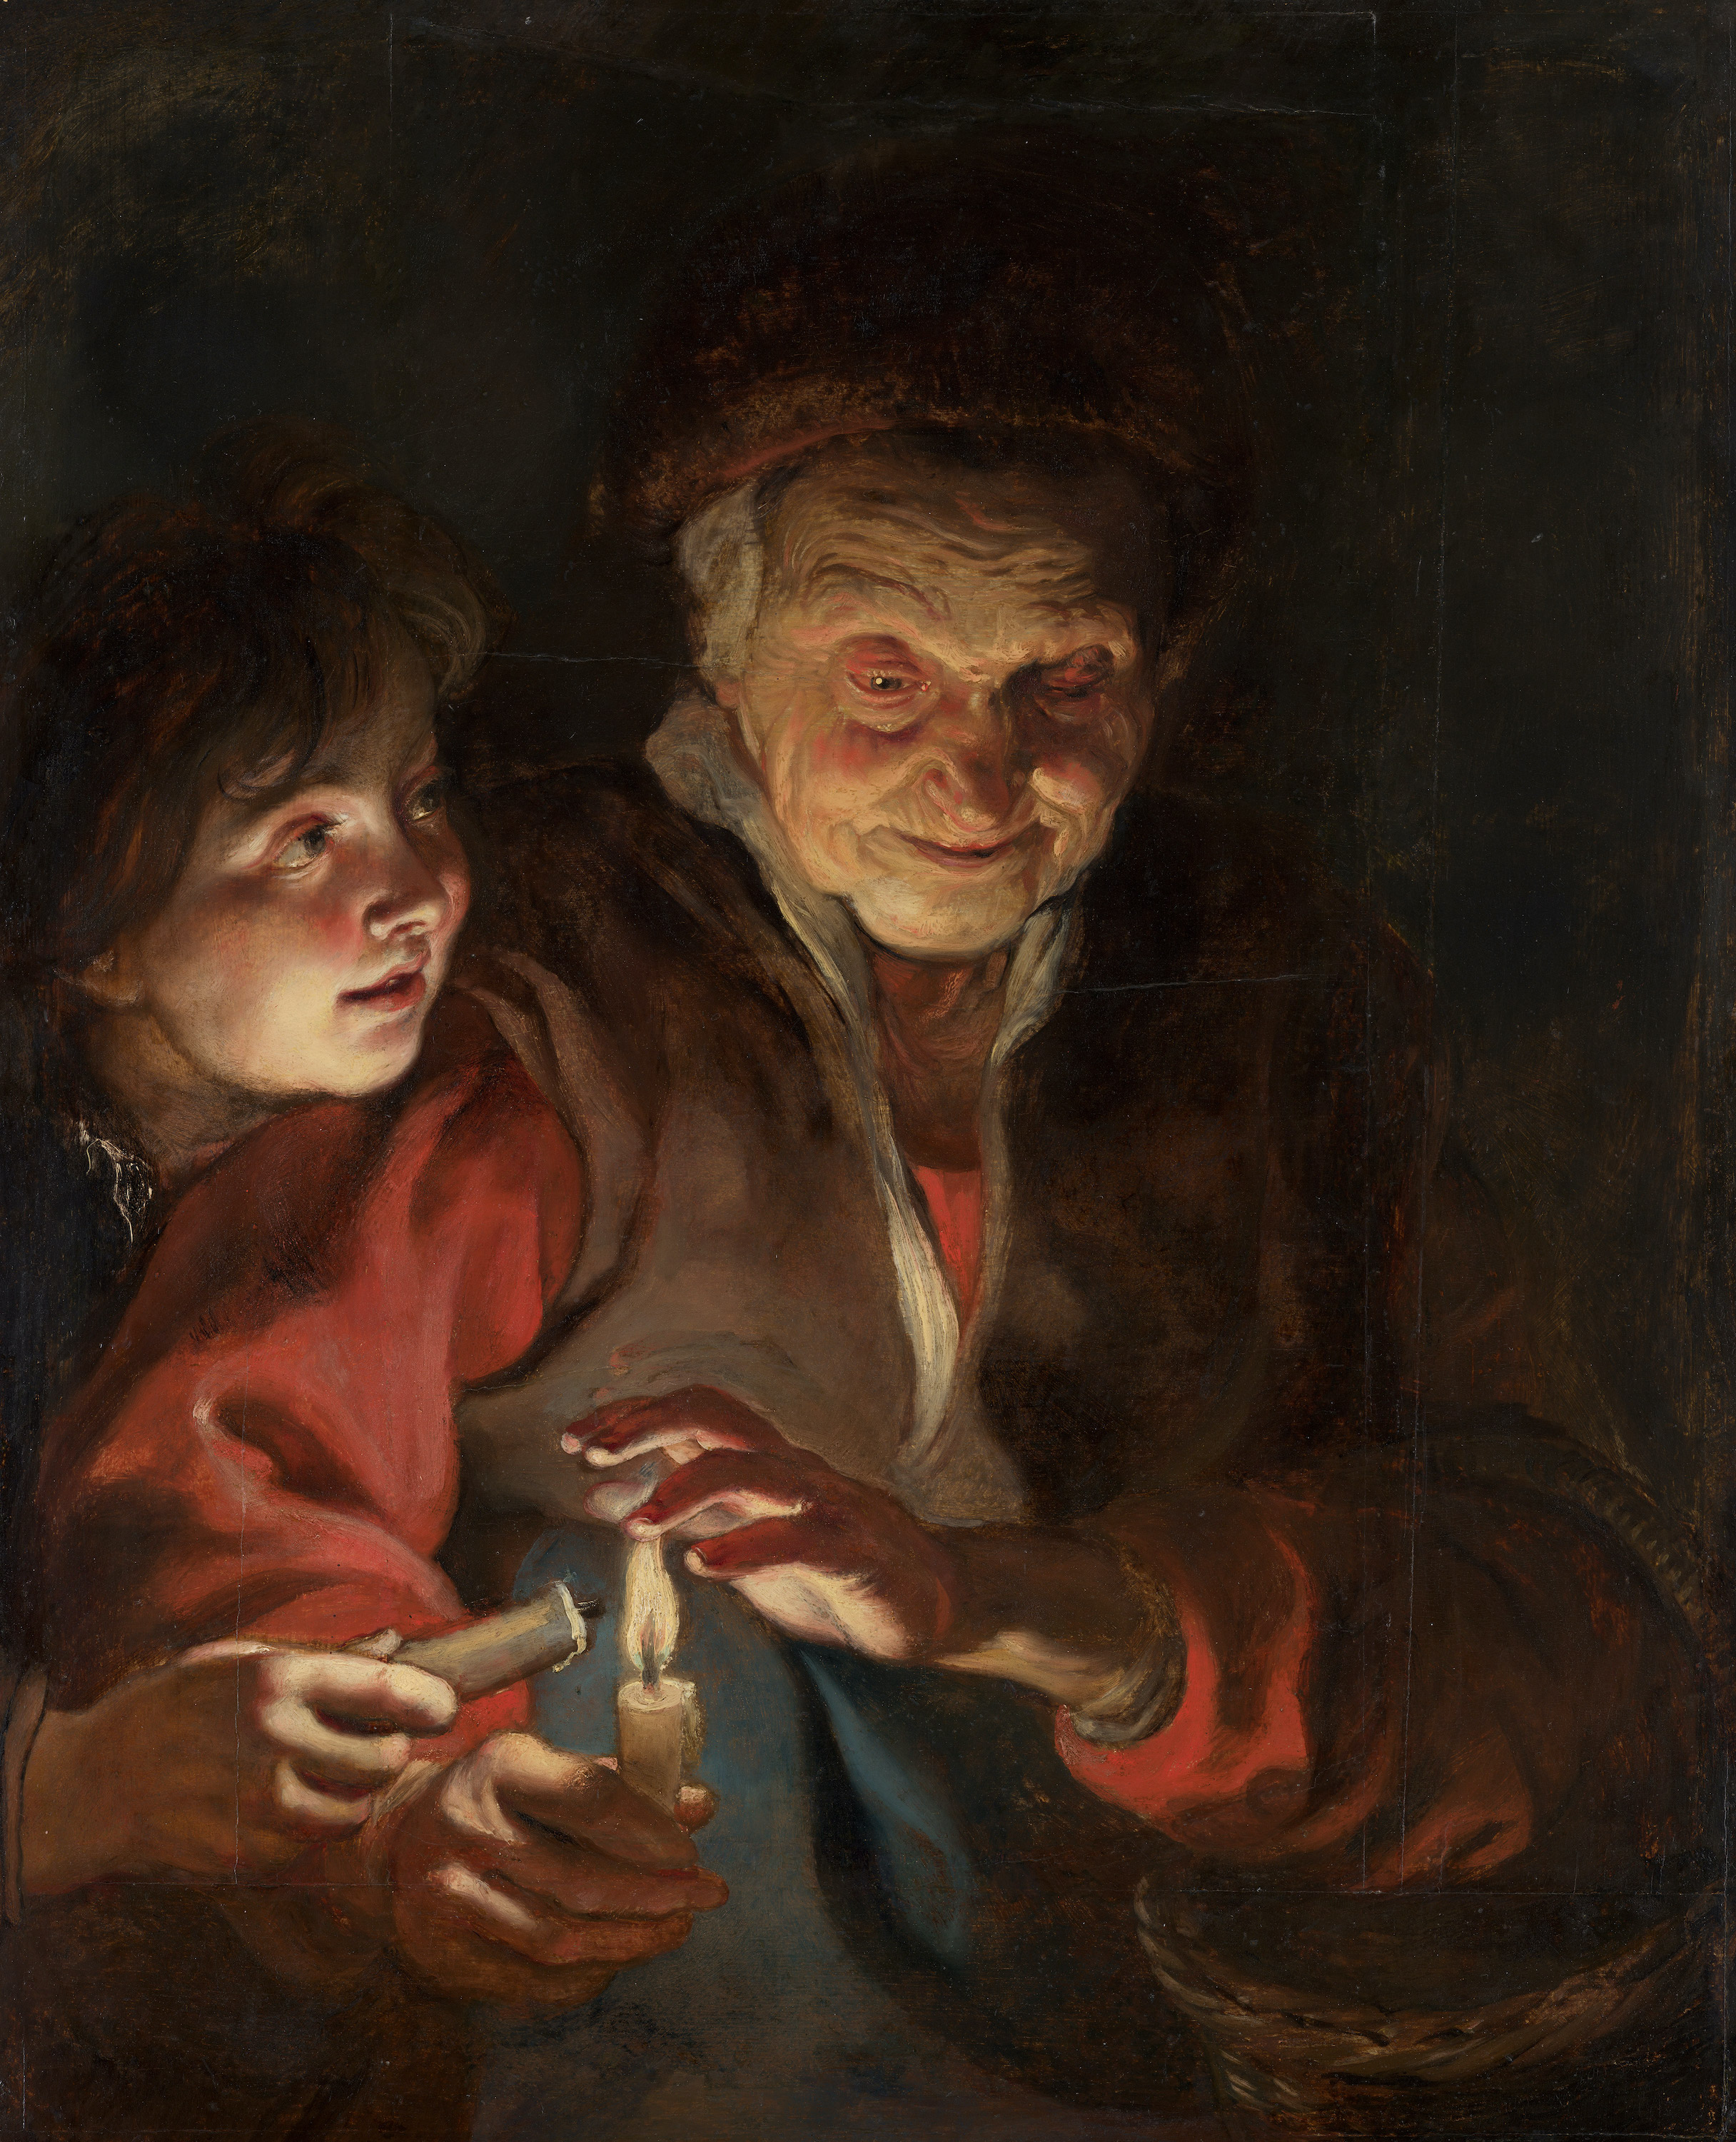 手持蠟燭的老婦人與男孩 by Peter Paul Rubens - 約1616 - 1617年 - 77 x 62.5 cm 